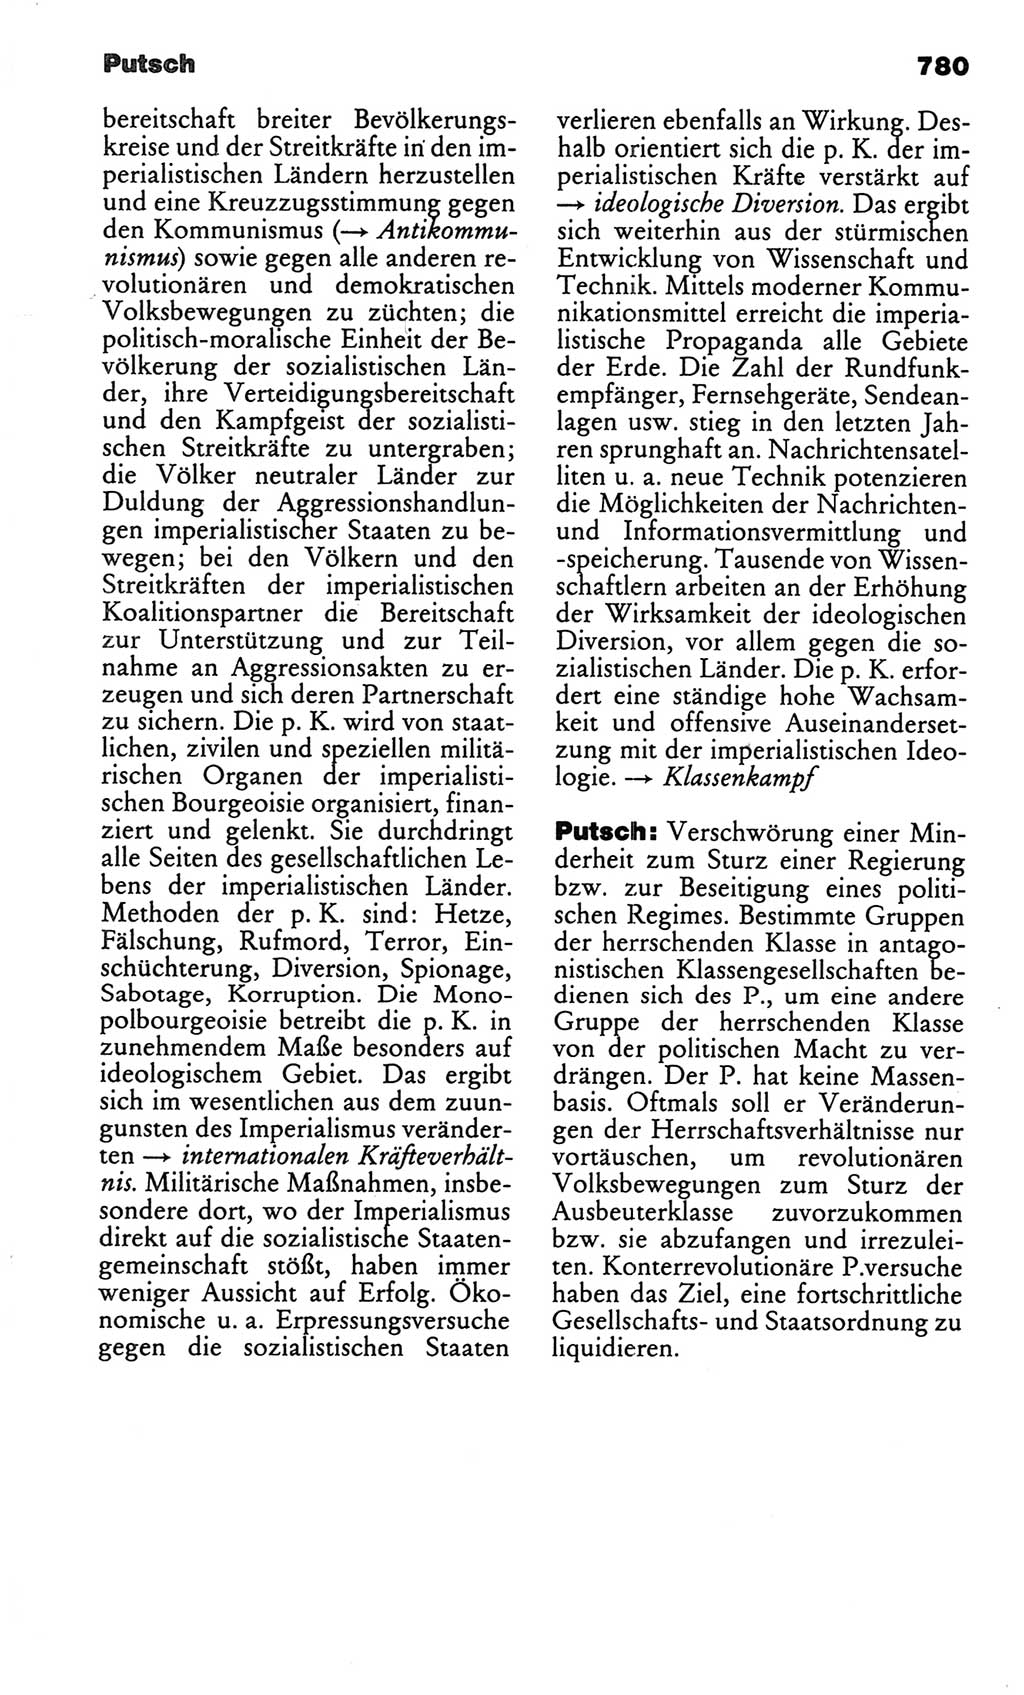 Kleines politisches Wörterbuch [Deutsche Demokratische Republik (DDR)] 1986, Seite 780 (Kl. pol. Wb. DDR 1986, S. 780)